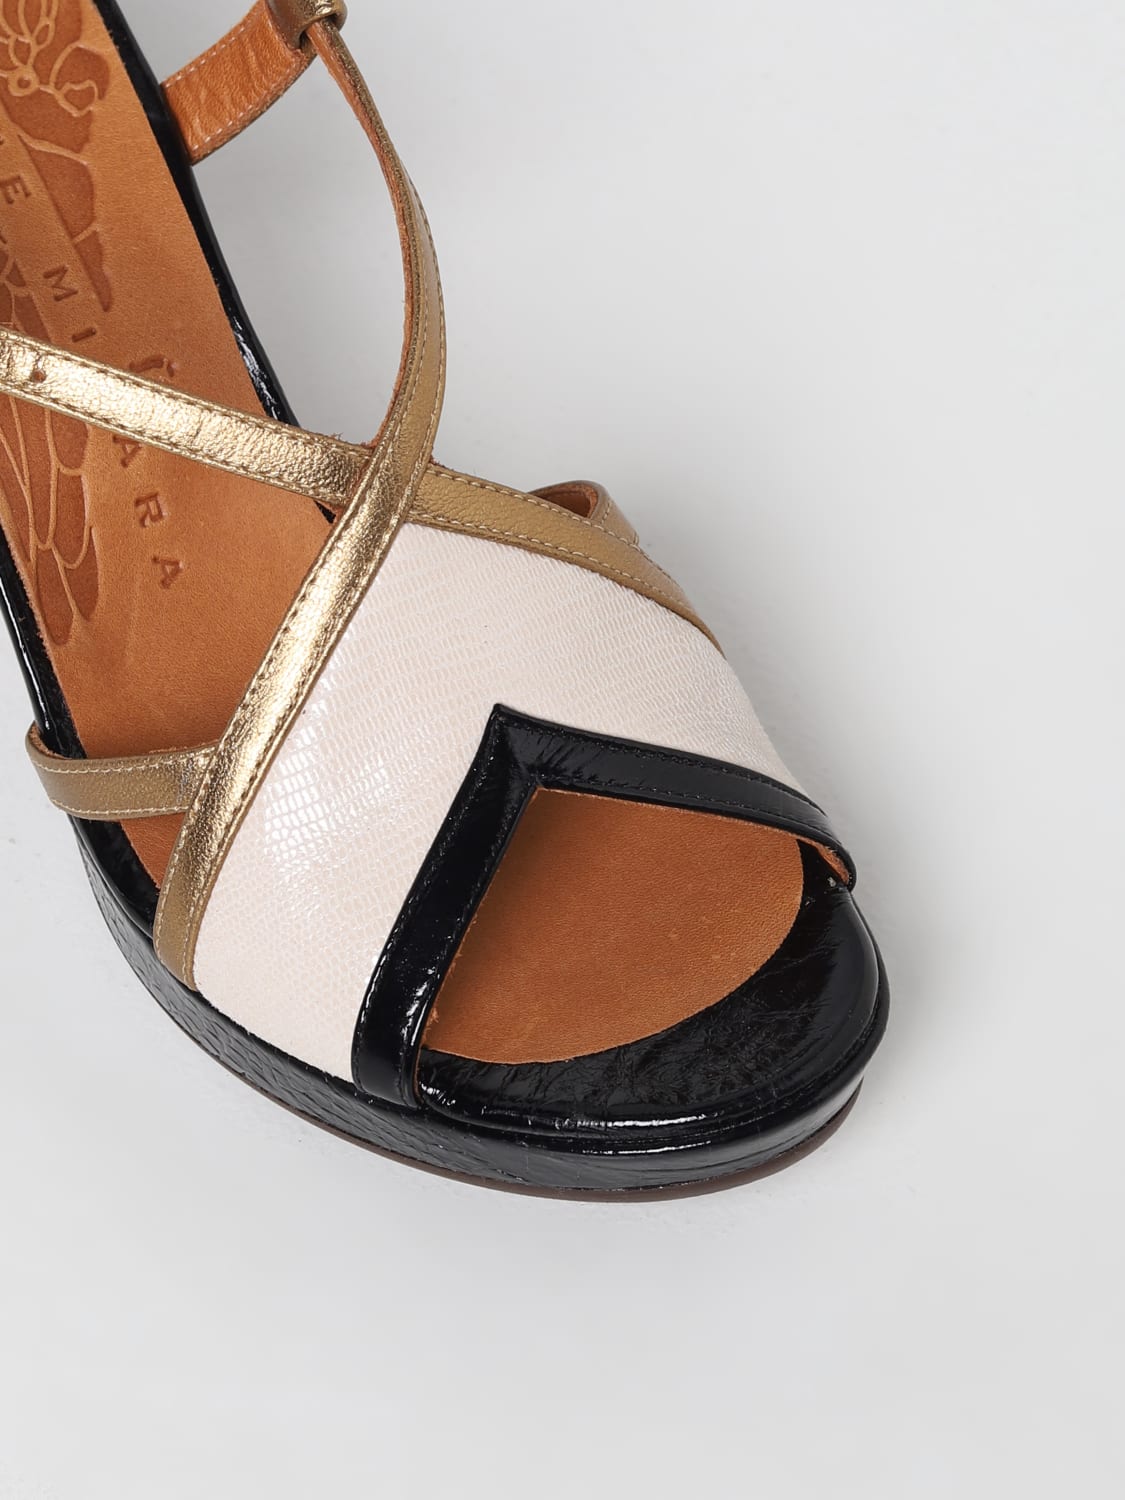 Sandales à talons Chie Mihara: Sandales à talons Chie Mihara femme noir 2